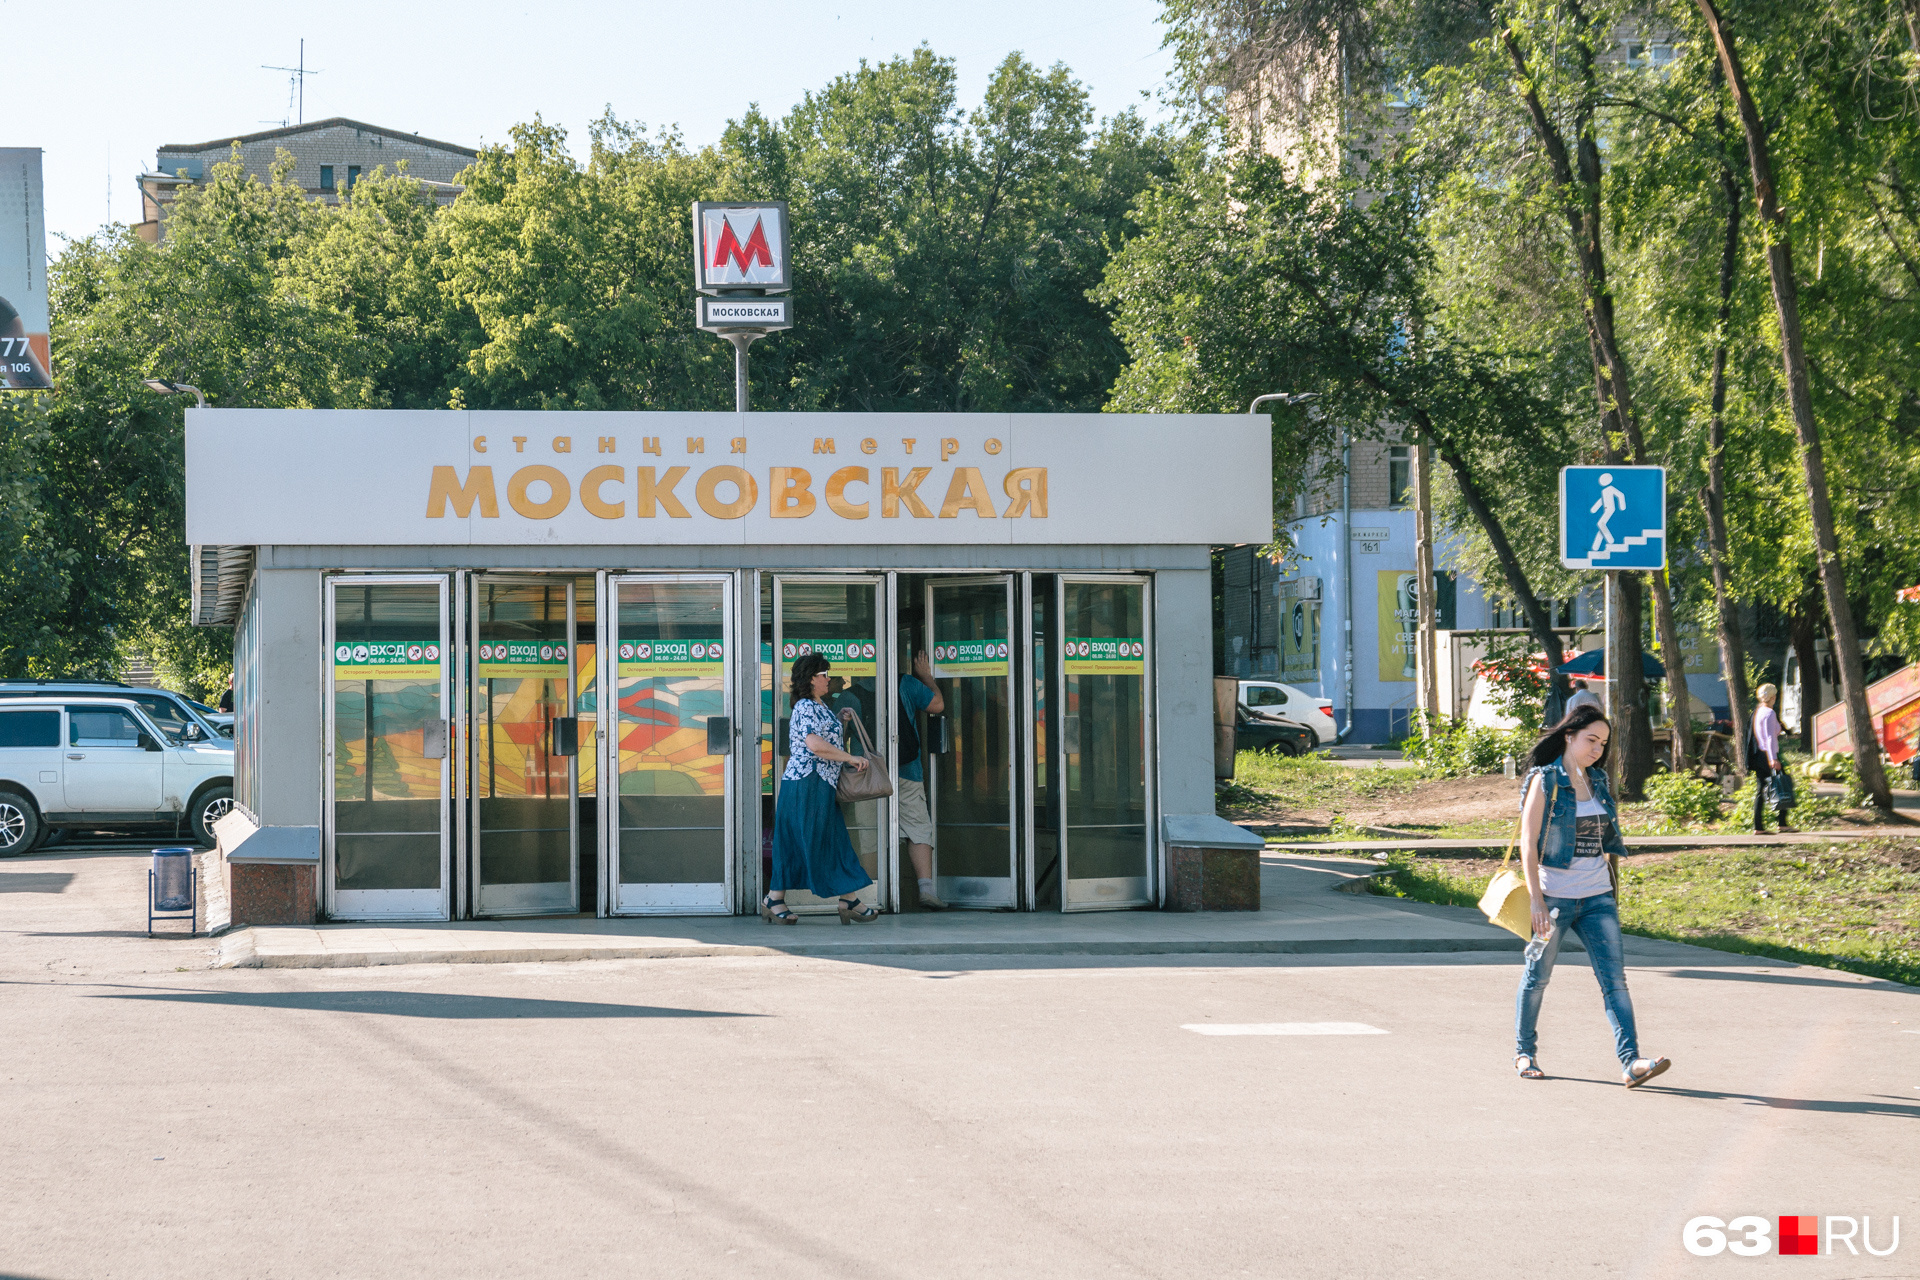 Сейчас на Московском шоссе есть только одна станция метро — в районе пересечения с улицей Гагарина